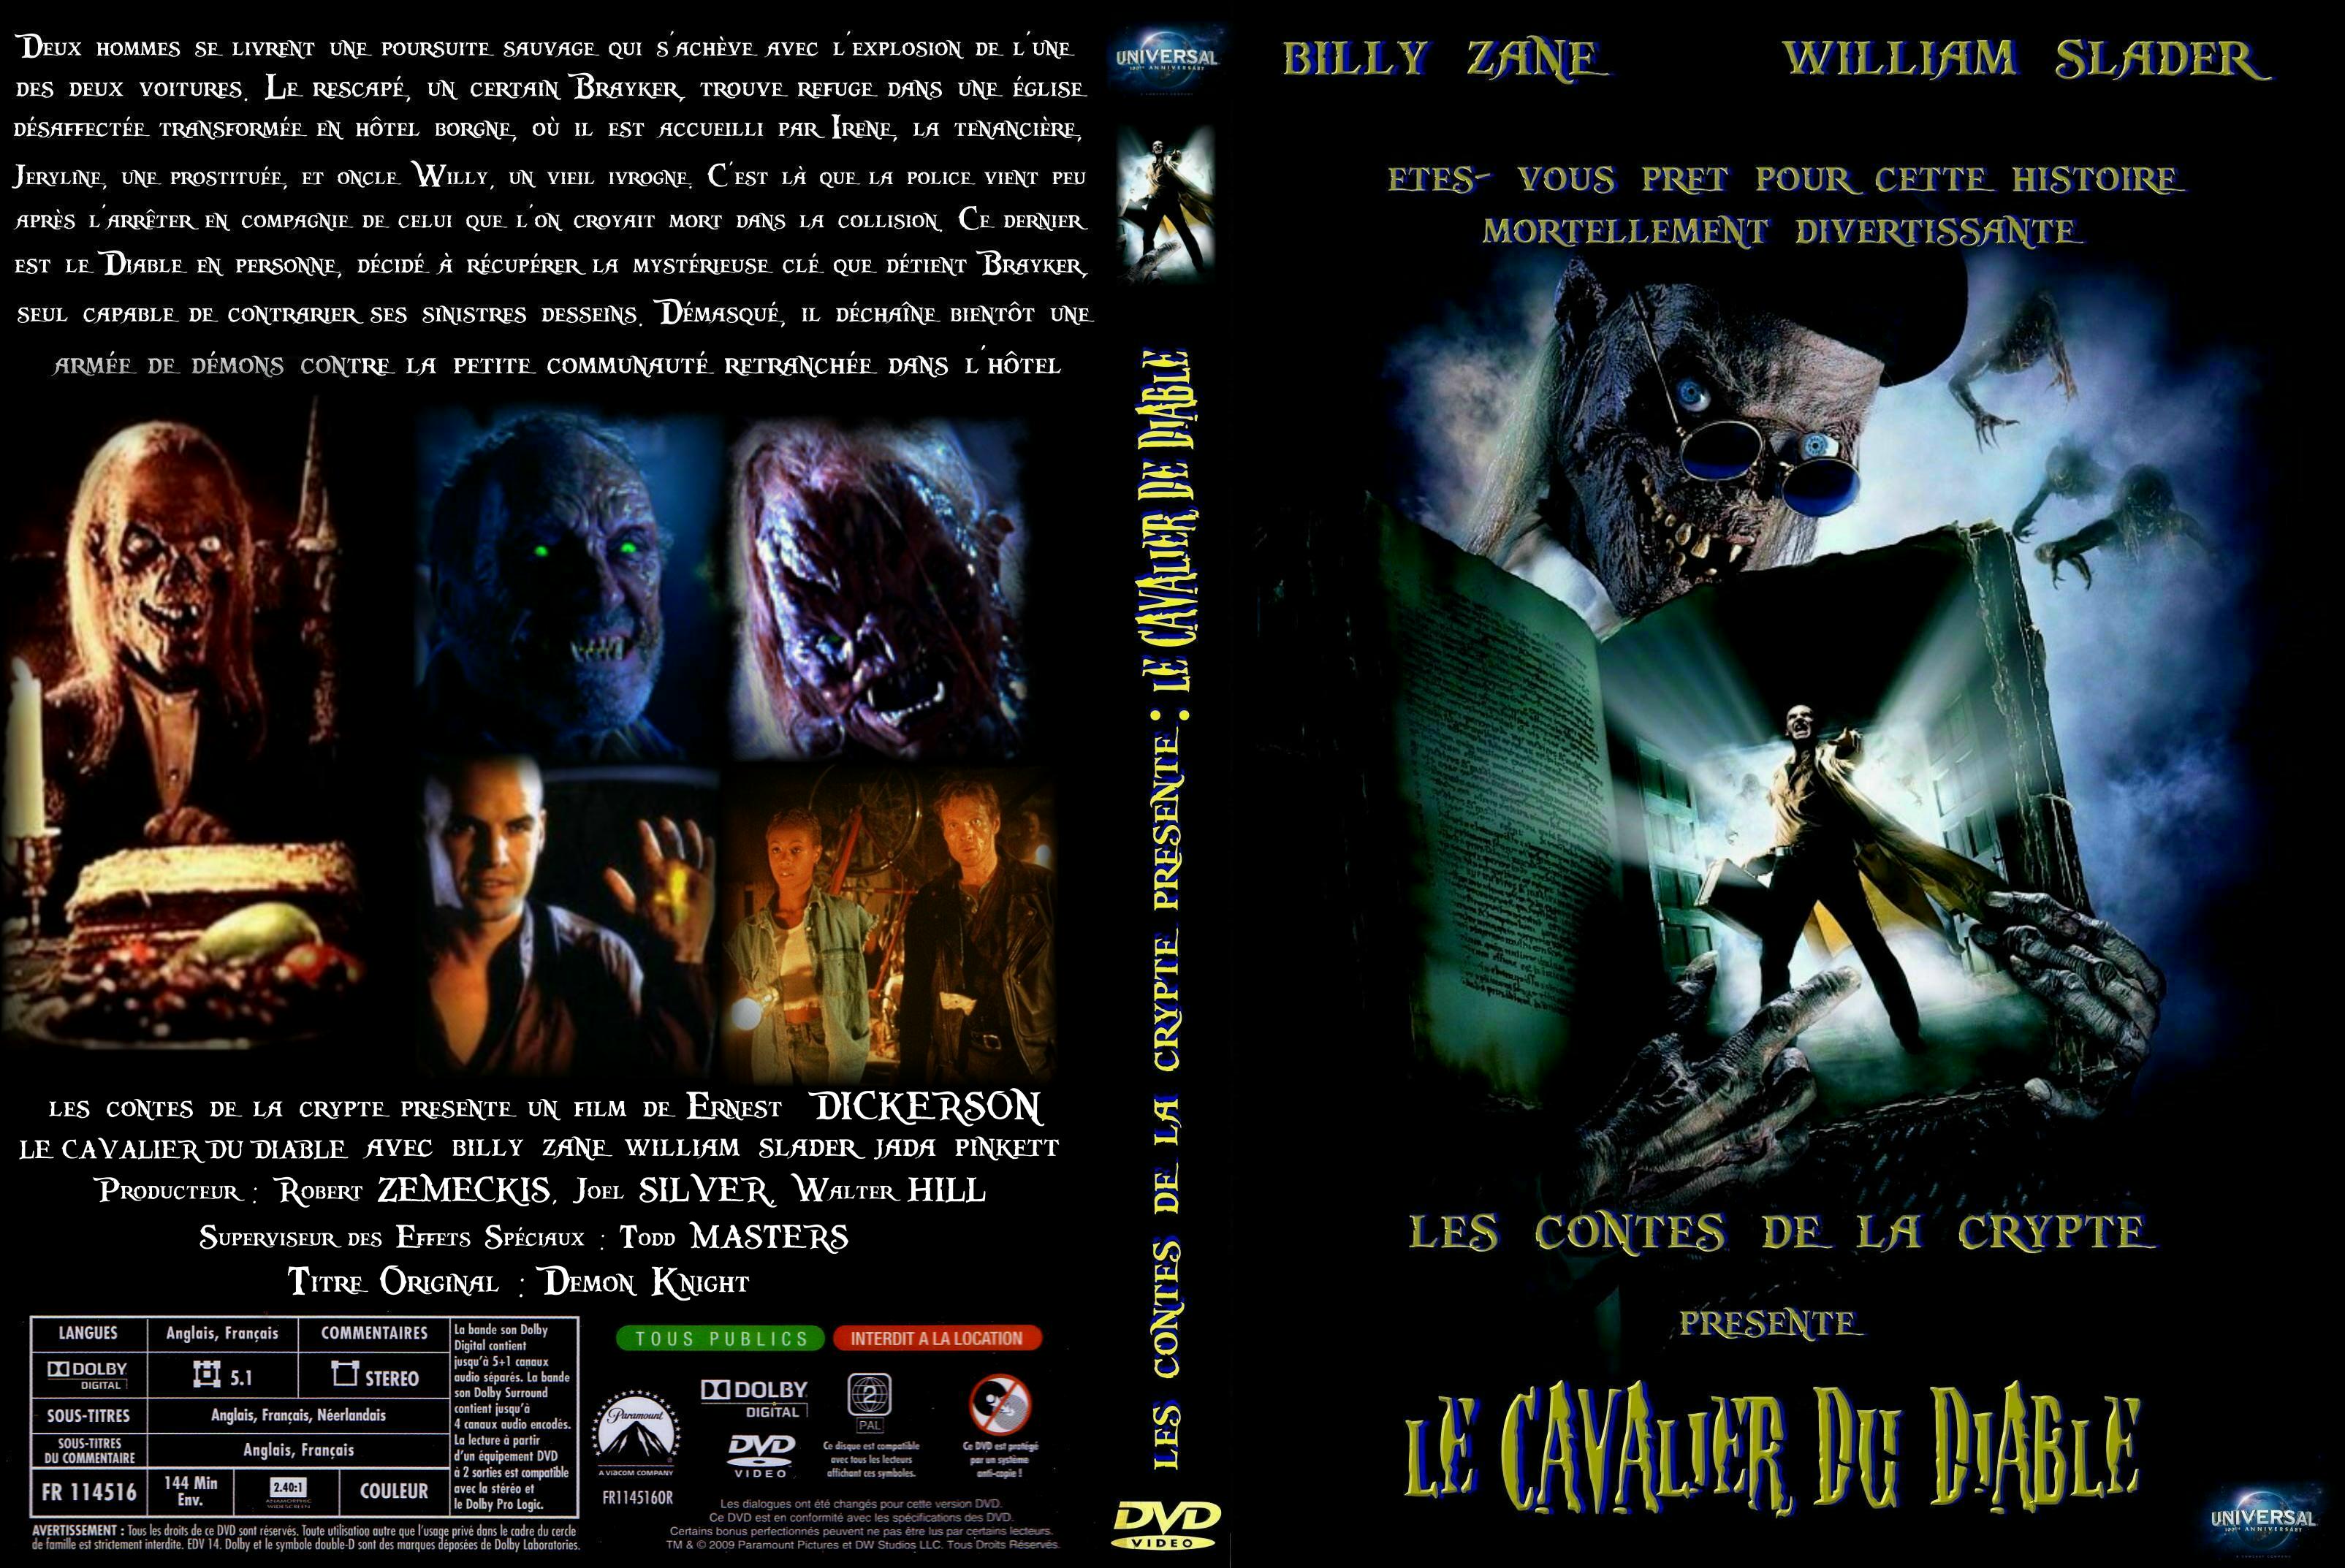 Jaquette DVD Le cavalier du diable custom